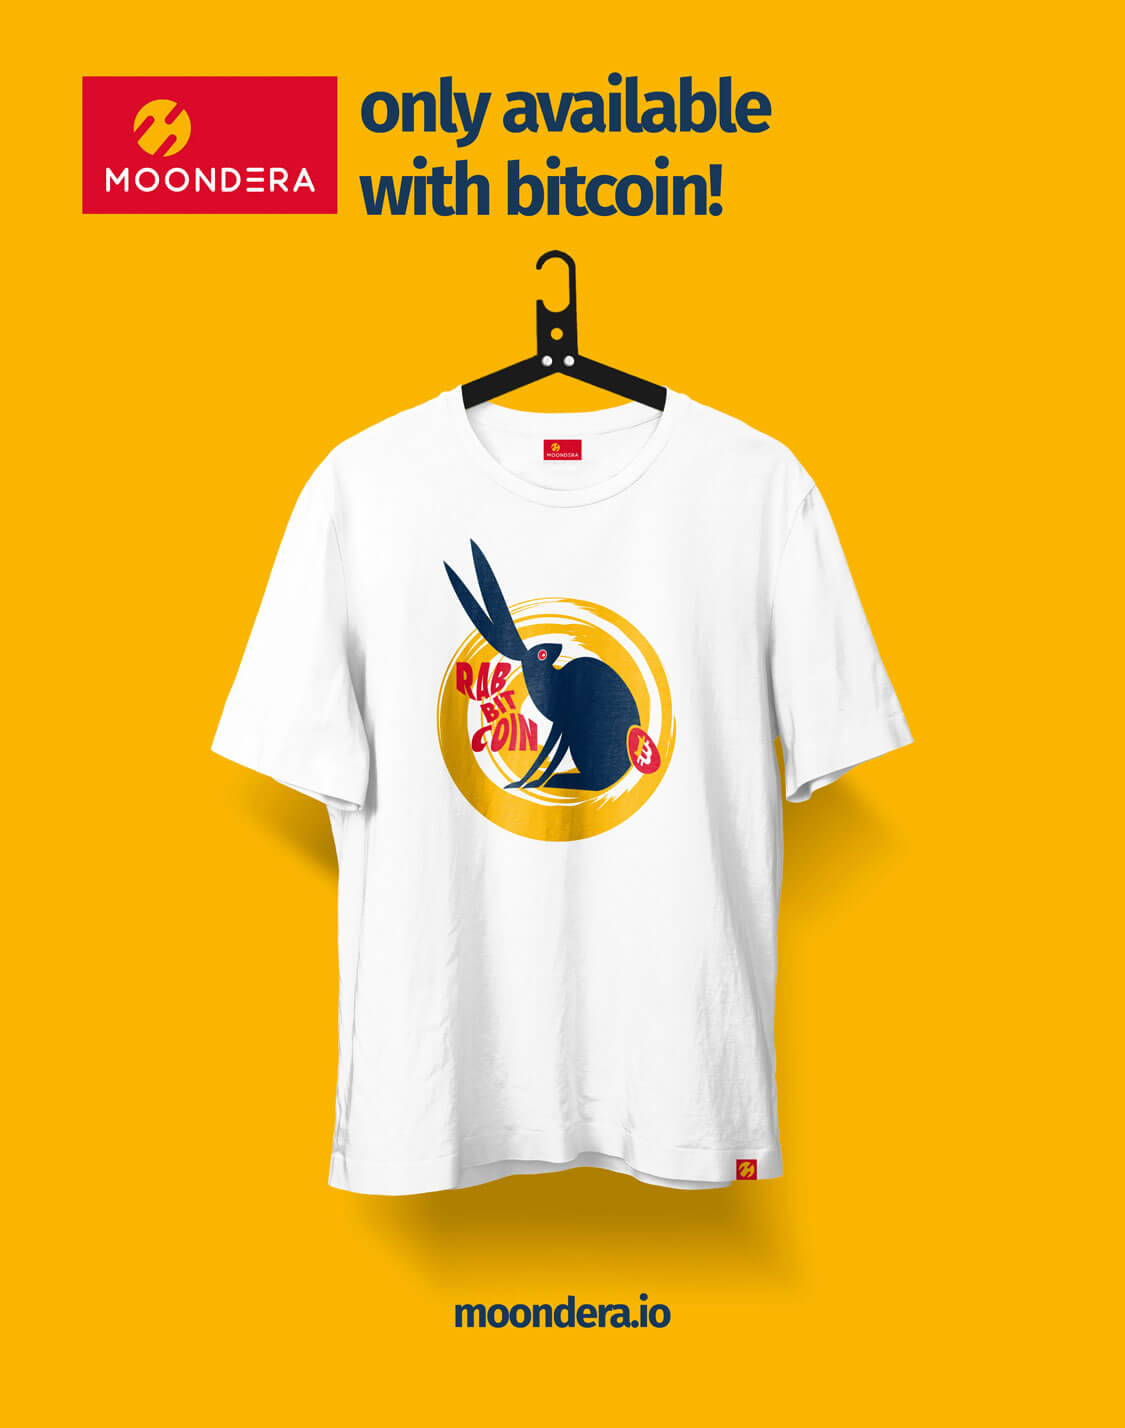 Das Bitcoin Rabbit hole 2022 Shirt überzeugt durch seine enorm hochwertige Verarbeitung. Das Shirt ist in hoher 200g Qualität gefertigt.